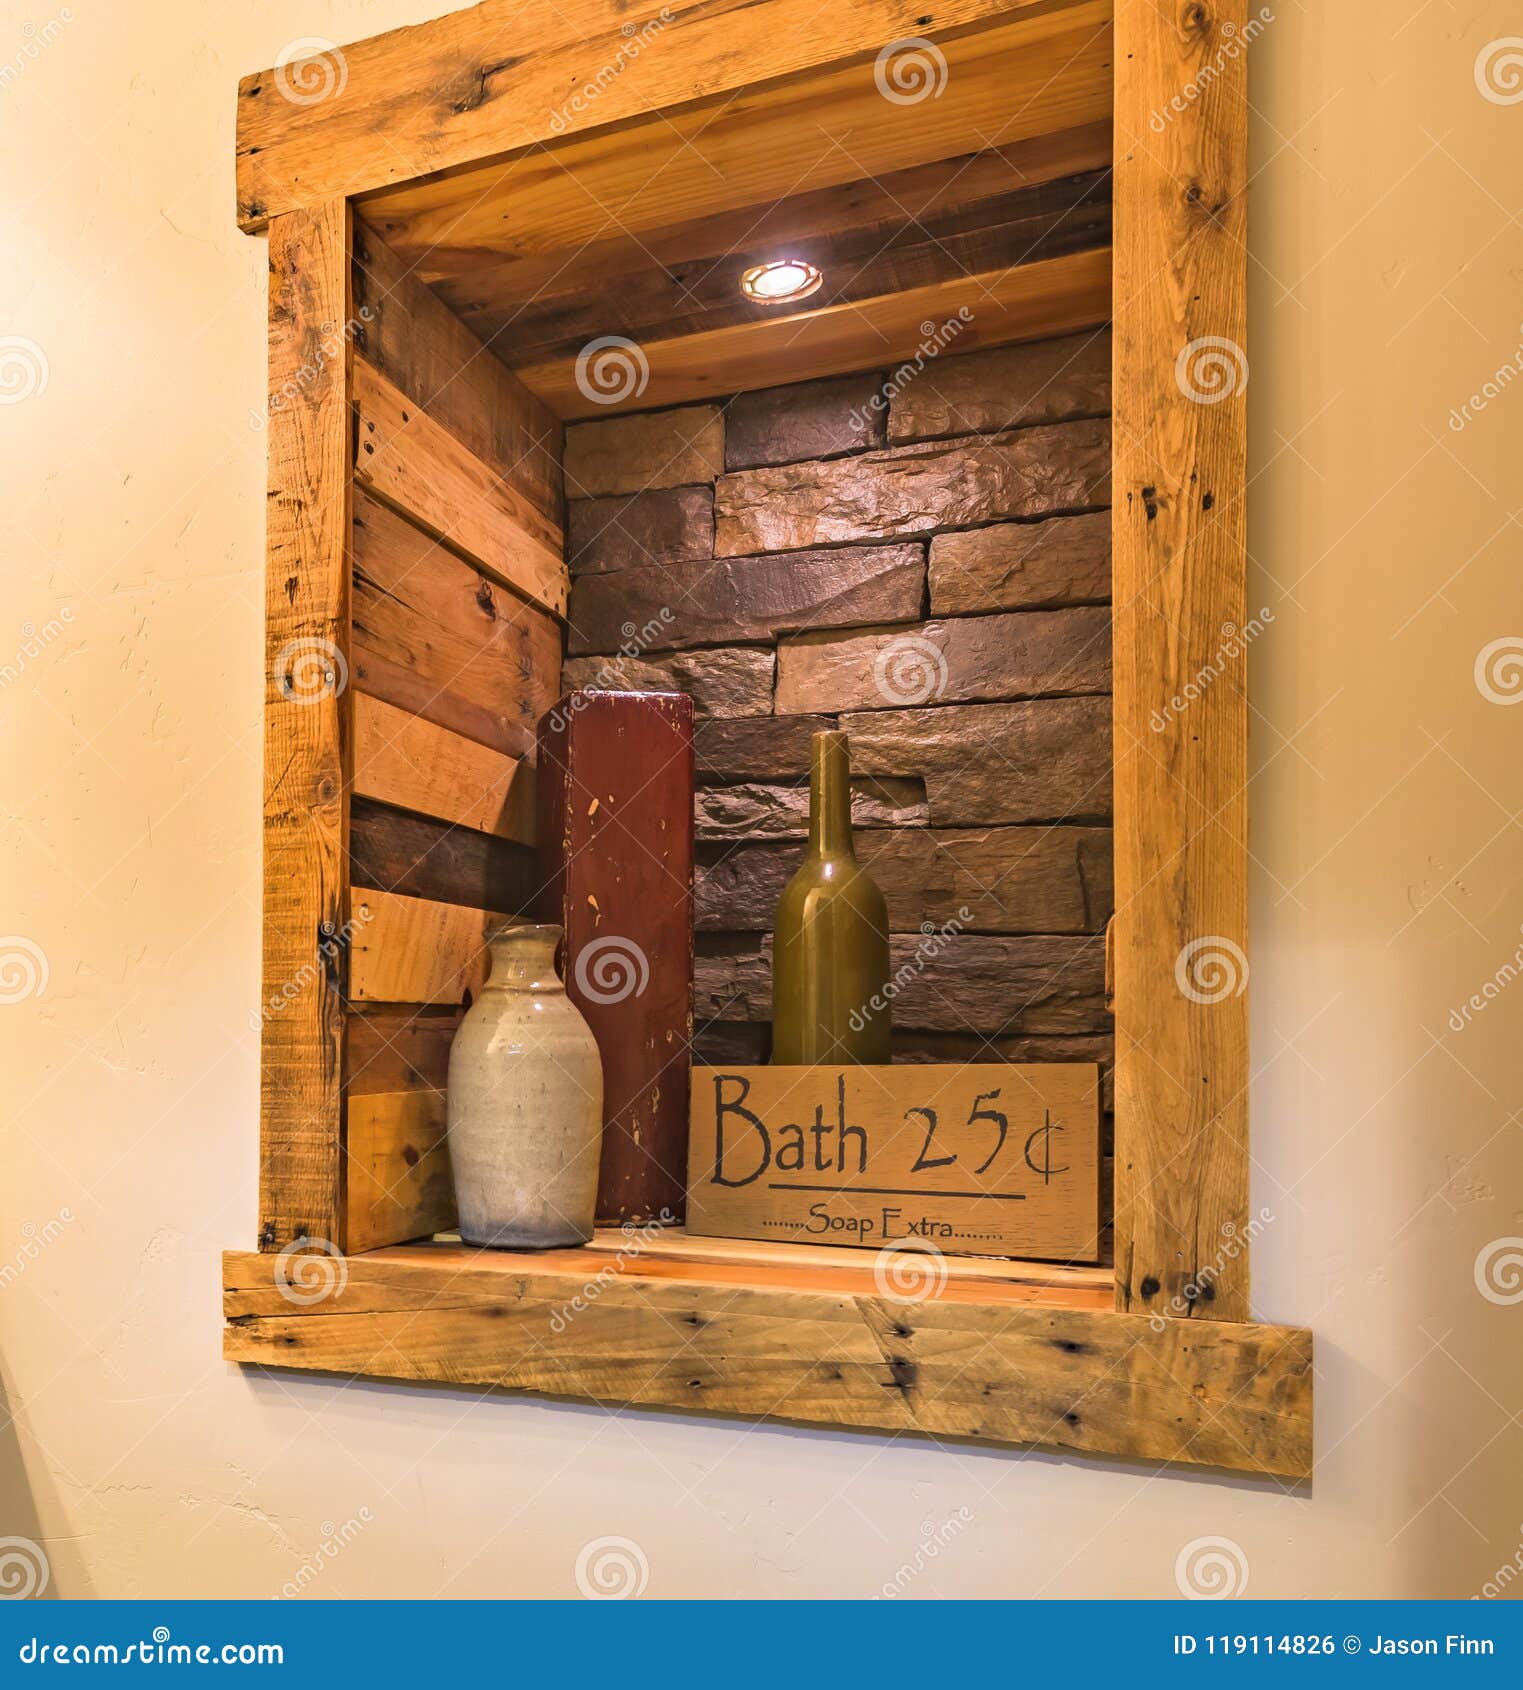 Interior Design Setup In Rustic Bathroom Stock Photo Image